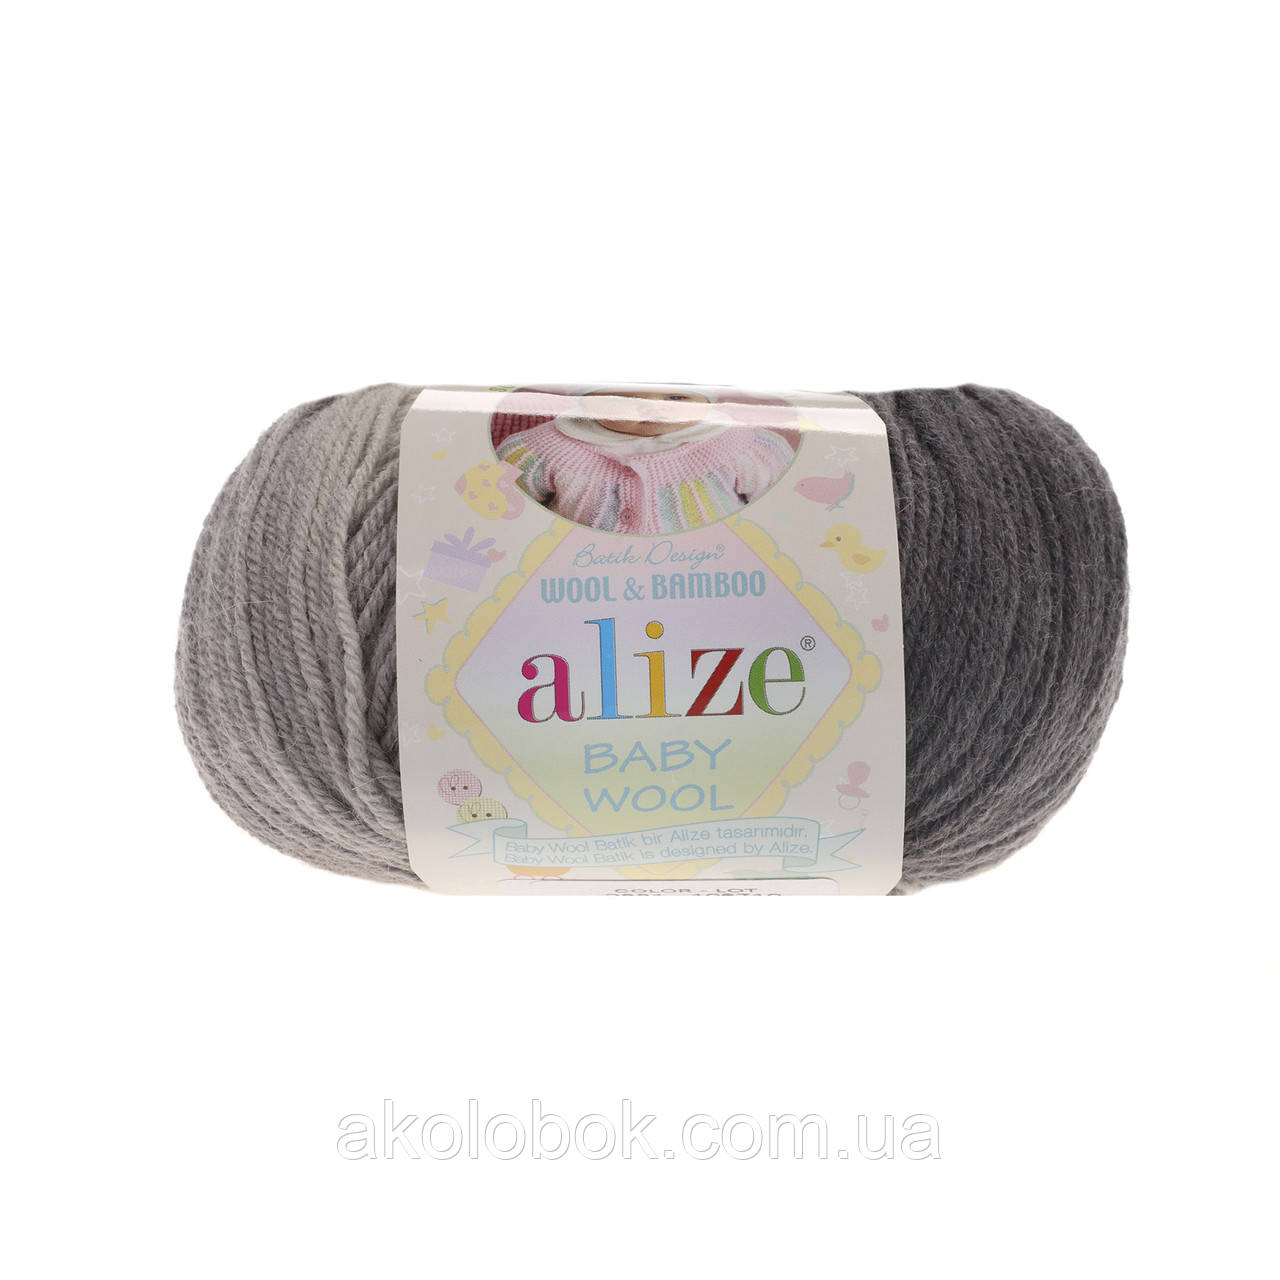 Пряжа для ручного в'язання Alize Baby wool batik (Алізе Бебі вул батік) 2881